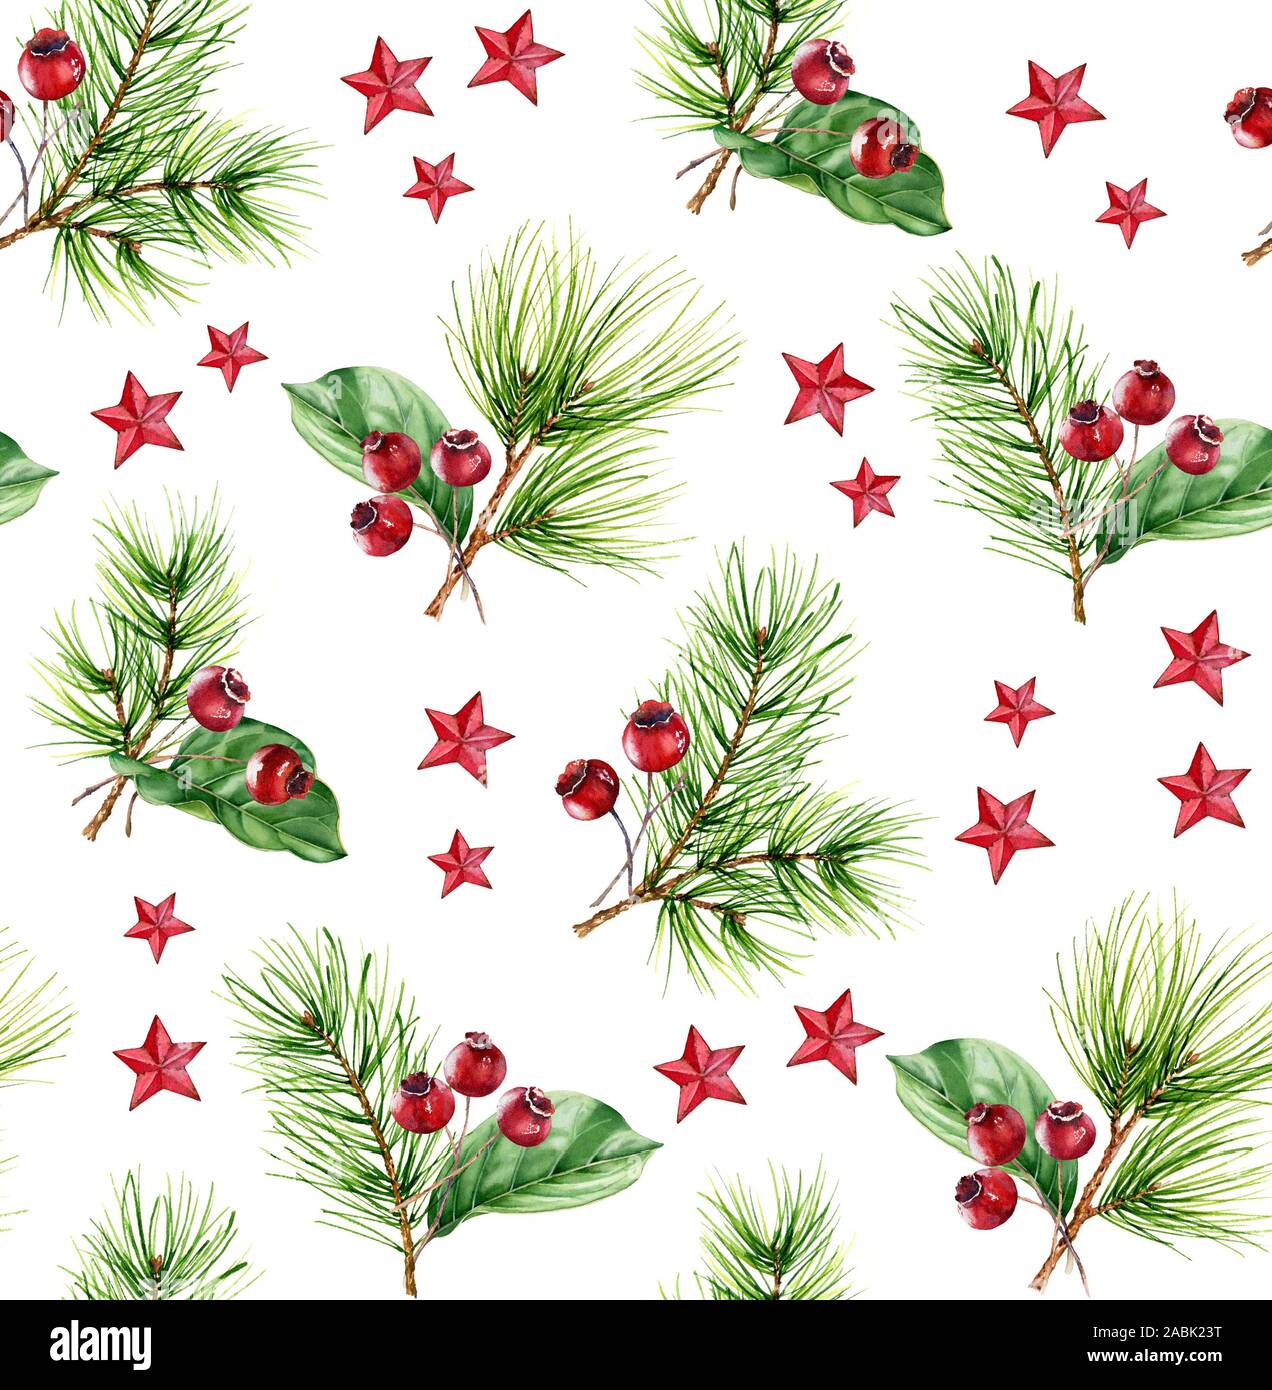 Aquarelle de Noël motif transparent. Illustration peinte à la main avec des arbres de pin, fruits rouges et star de la décoration. Arrière-plan de l'accueil des vacances d'hiver Banque D'Images